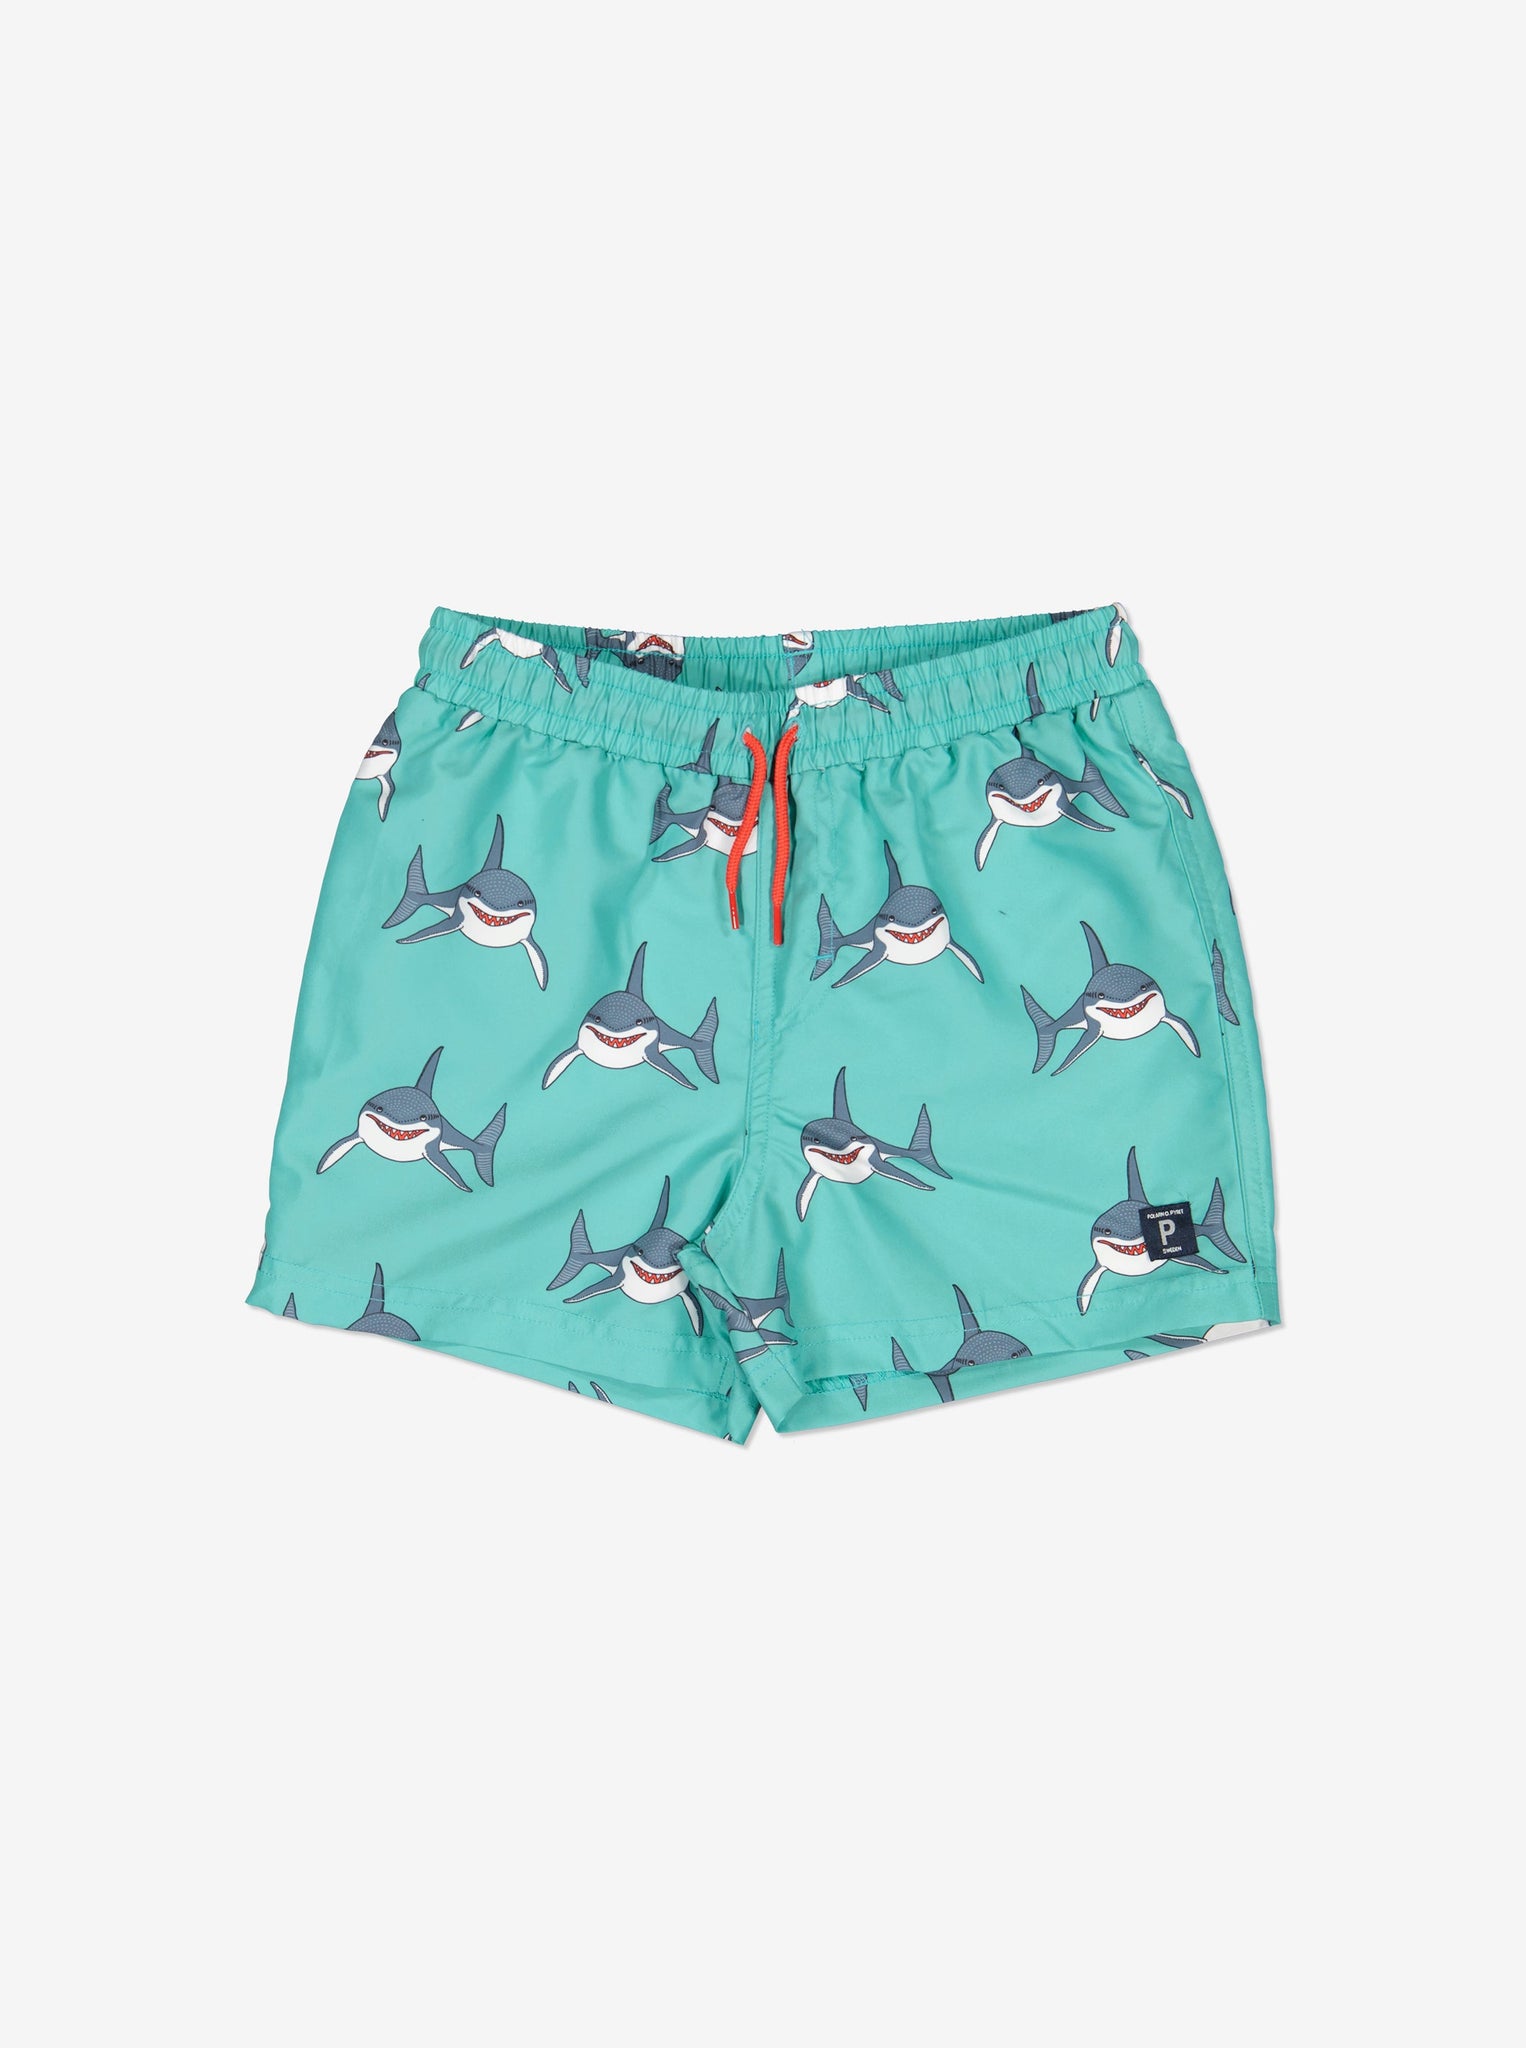 Shark Print Kids Swim Shorts